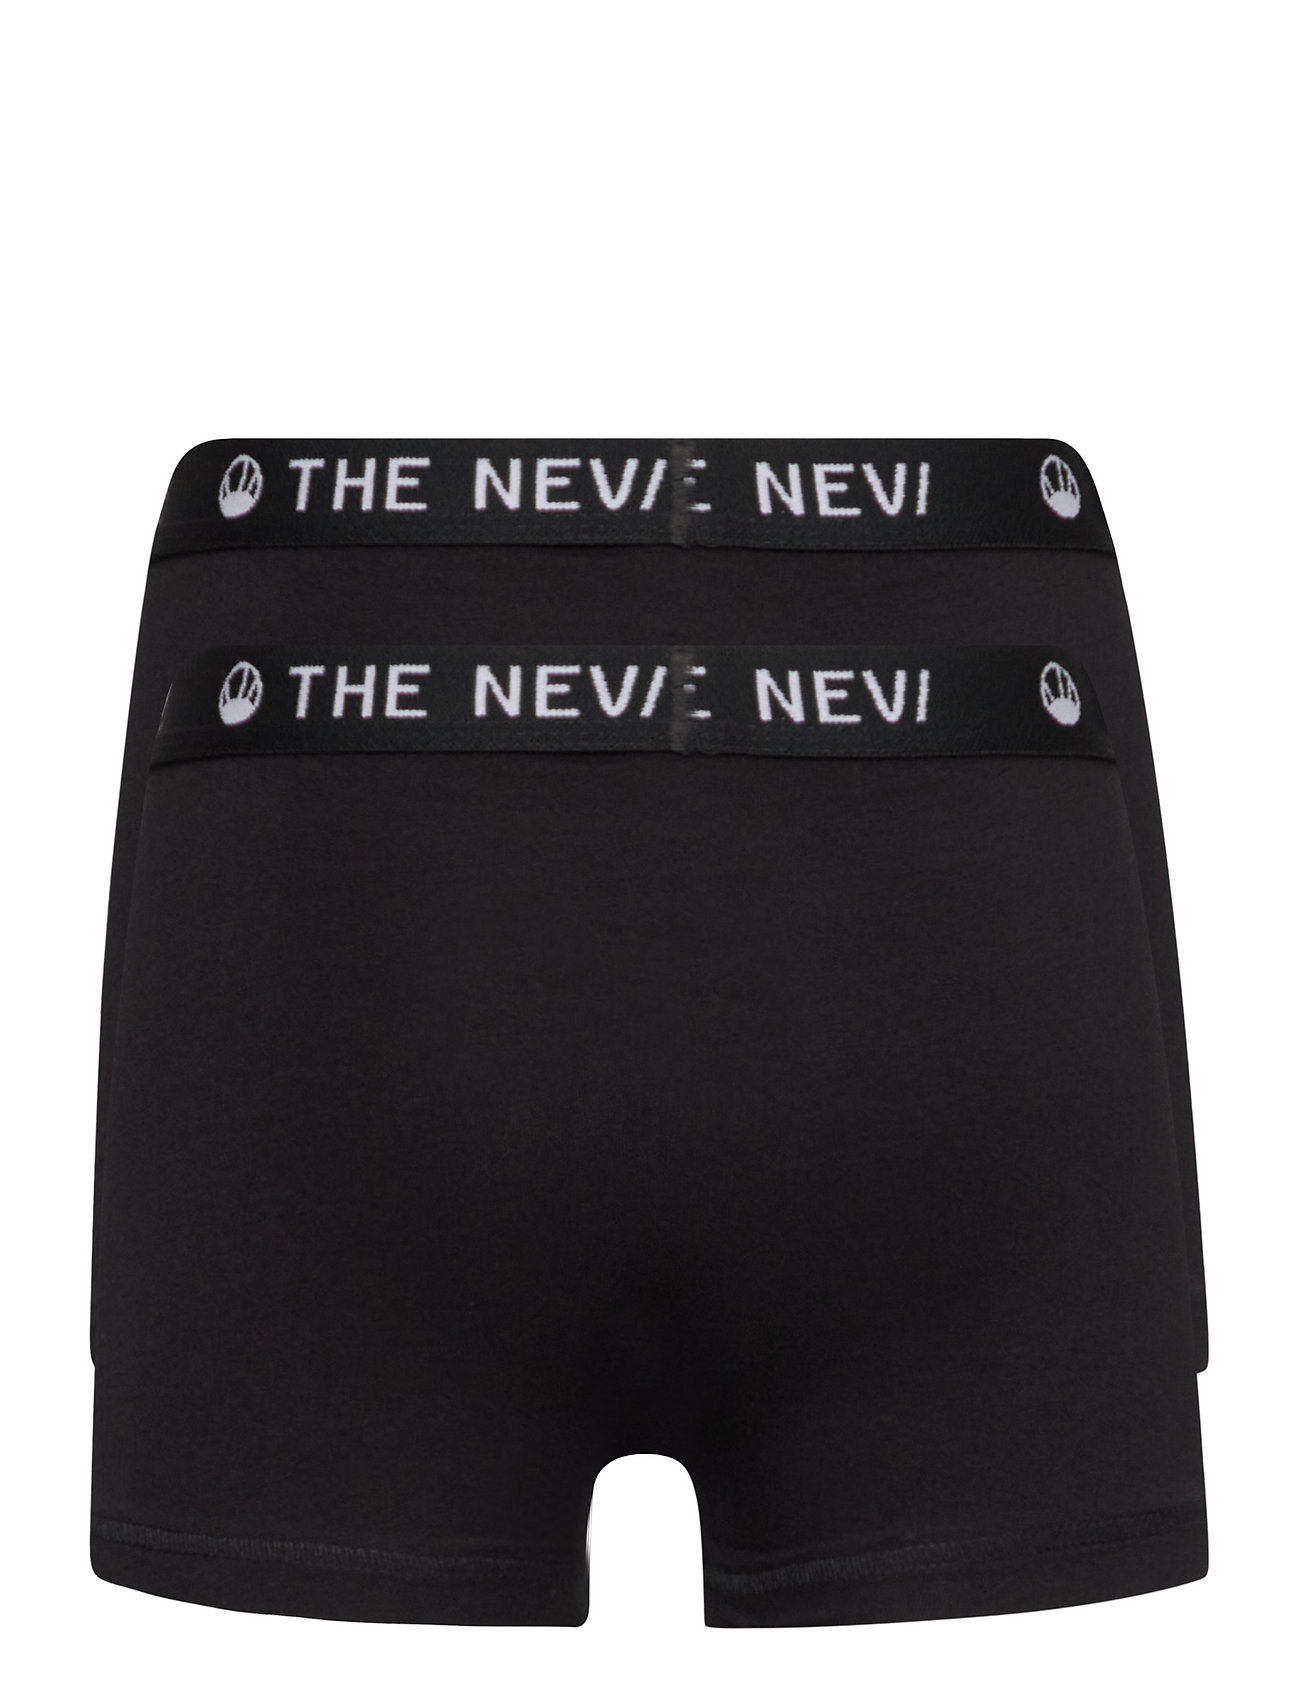 The New - 2-PACK ORGANIC BOXERS NOOS - püksid - black/black - 1